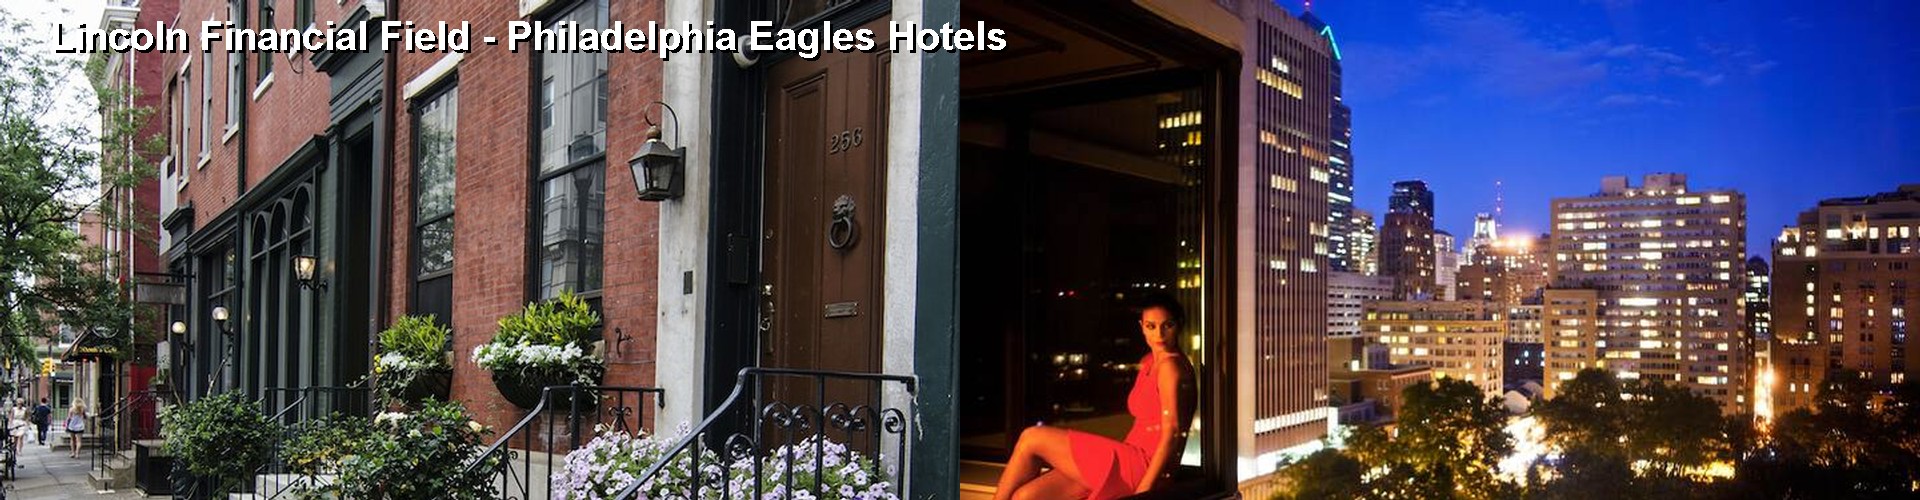 5 Best Hotels near Lincoln Financial Field - Philadelphia Eagles